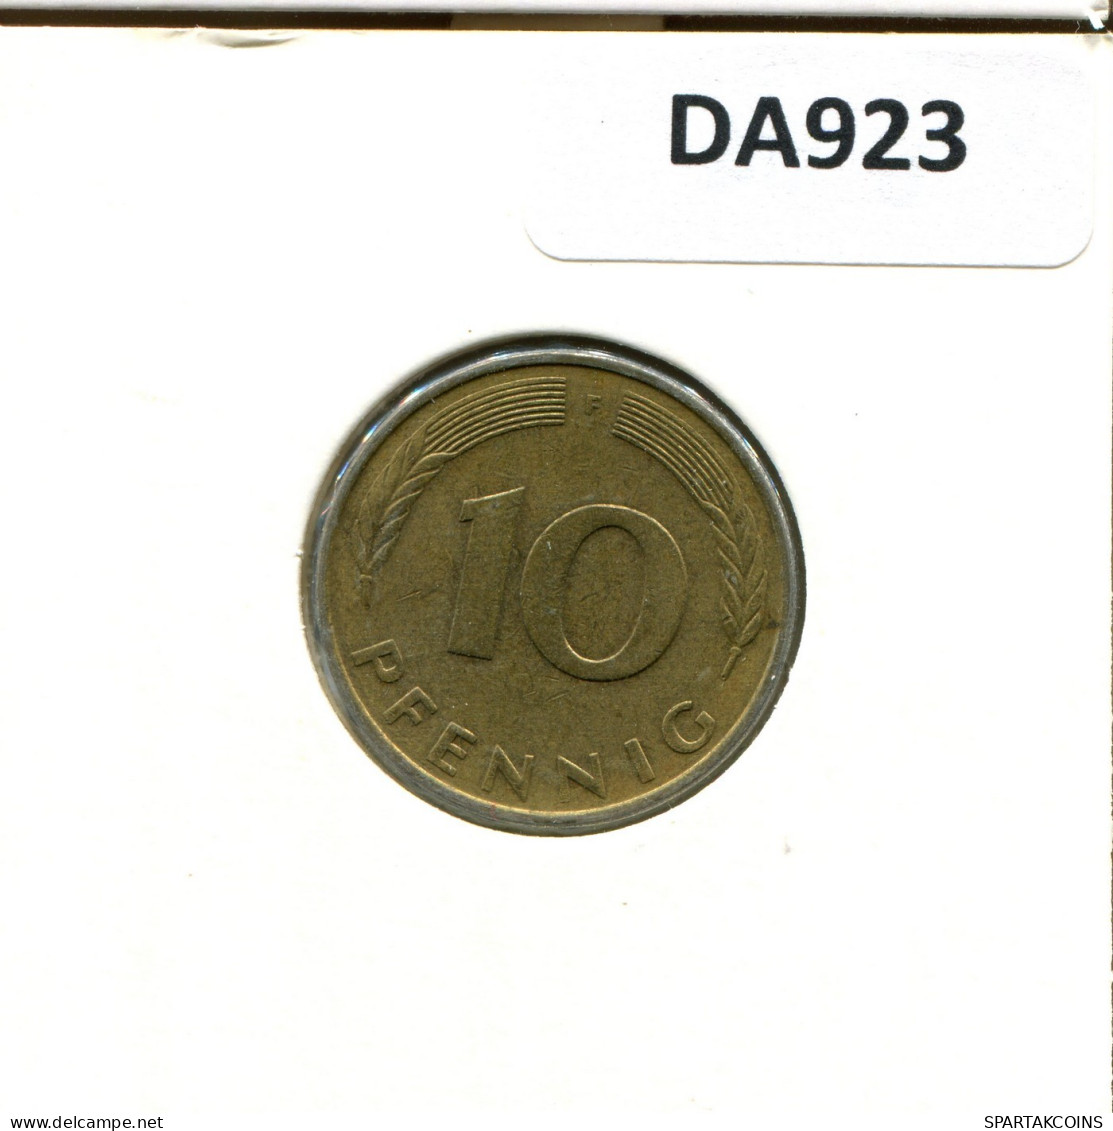 10 PFENNIG 1979 F BRD ALEMANIA Moneda GERMANY #DA923.E.A - 10 Pfennig